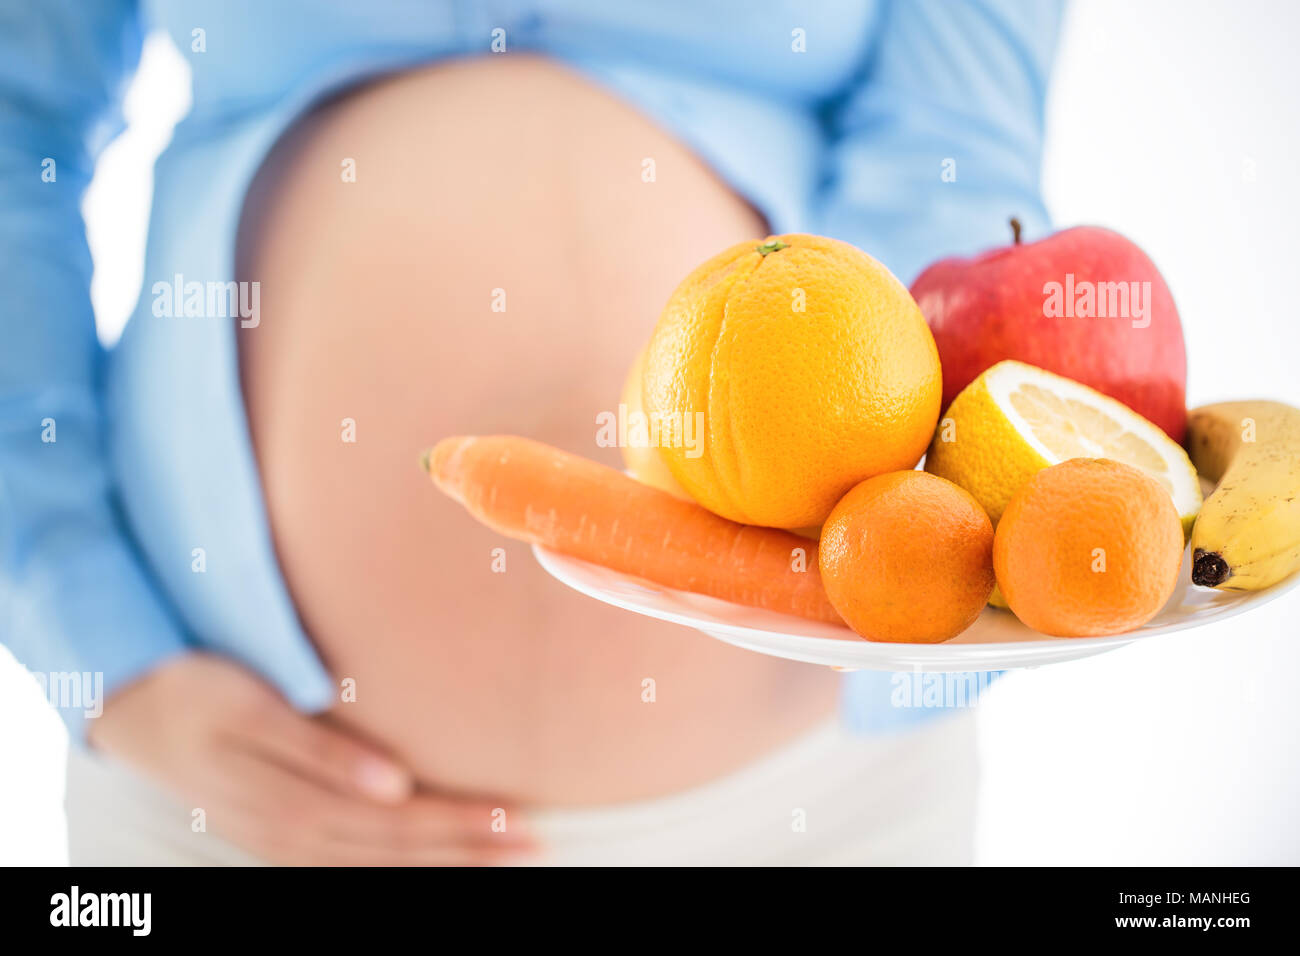 La gravidanza e la nutrizione dieta - donna incinta con frutti studio isolato su sfondo bianco Foto Stock